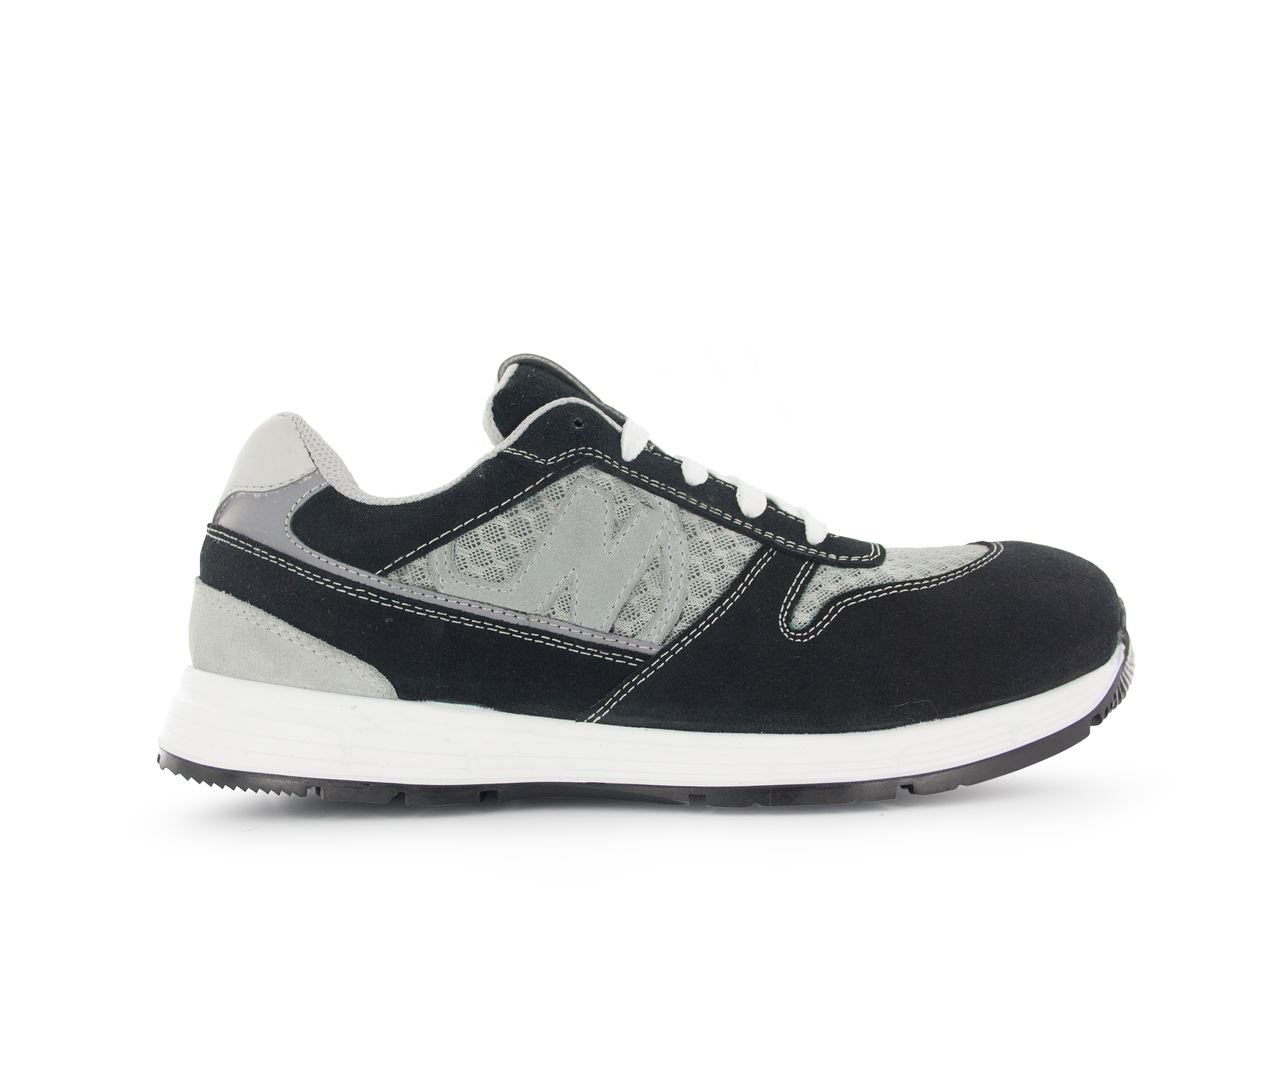 Chaussure de sécurité noir/gris Run Soft T.46 - Nord'Ways - RUN000246000NOGR